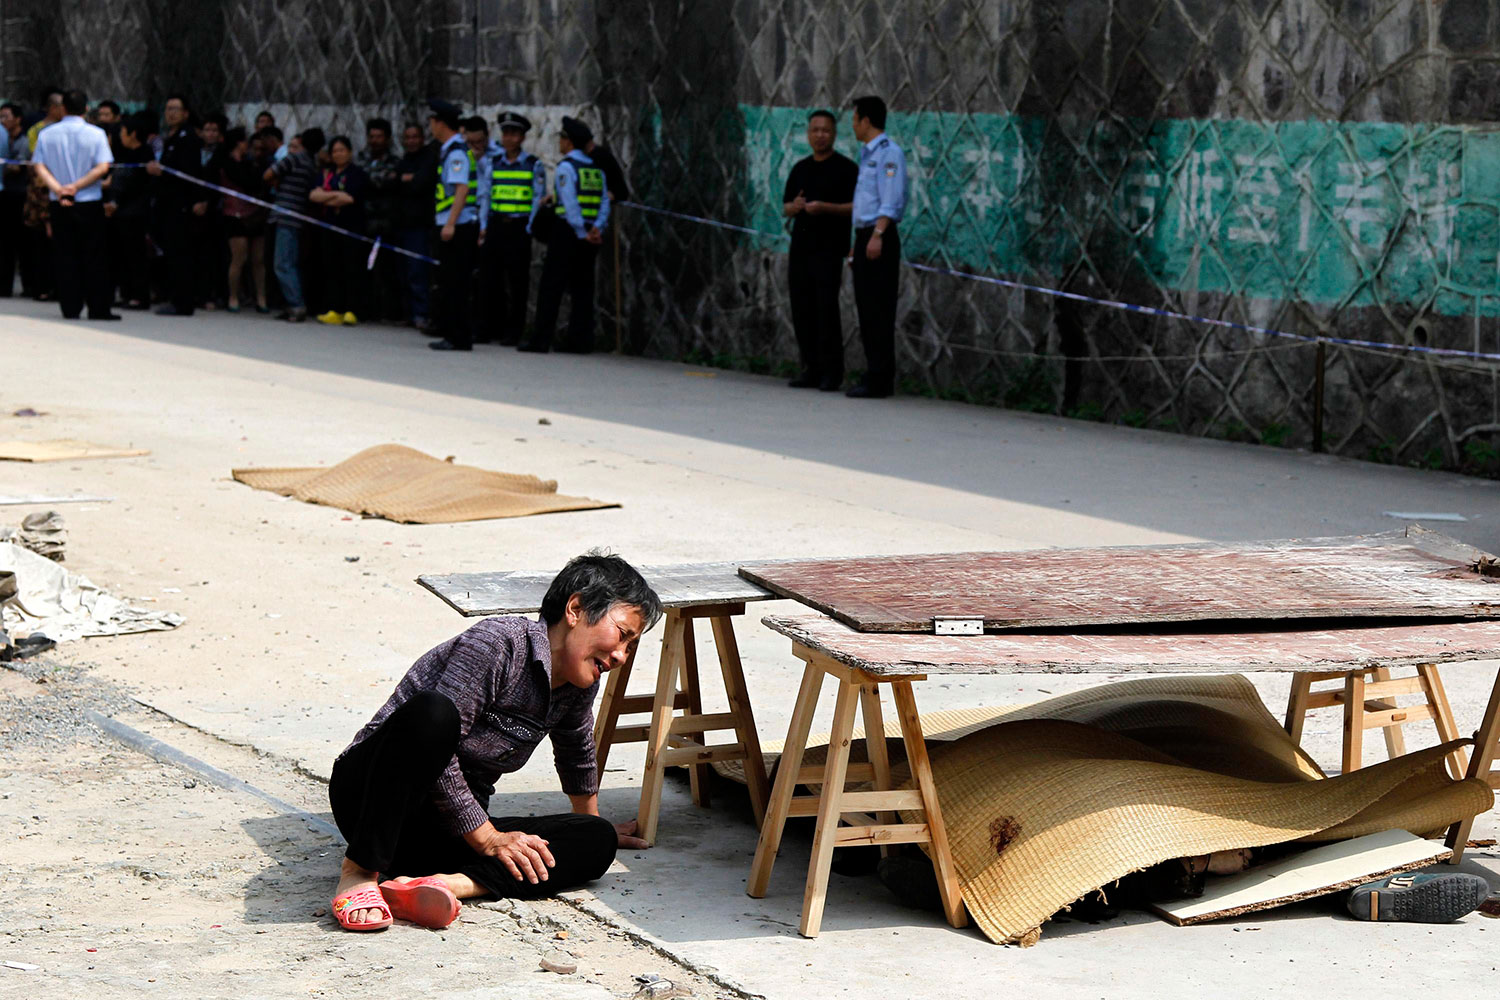 Mueren 7 personas arrolladas por un vehículo en China